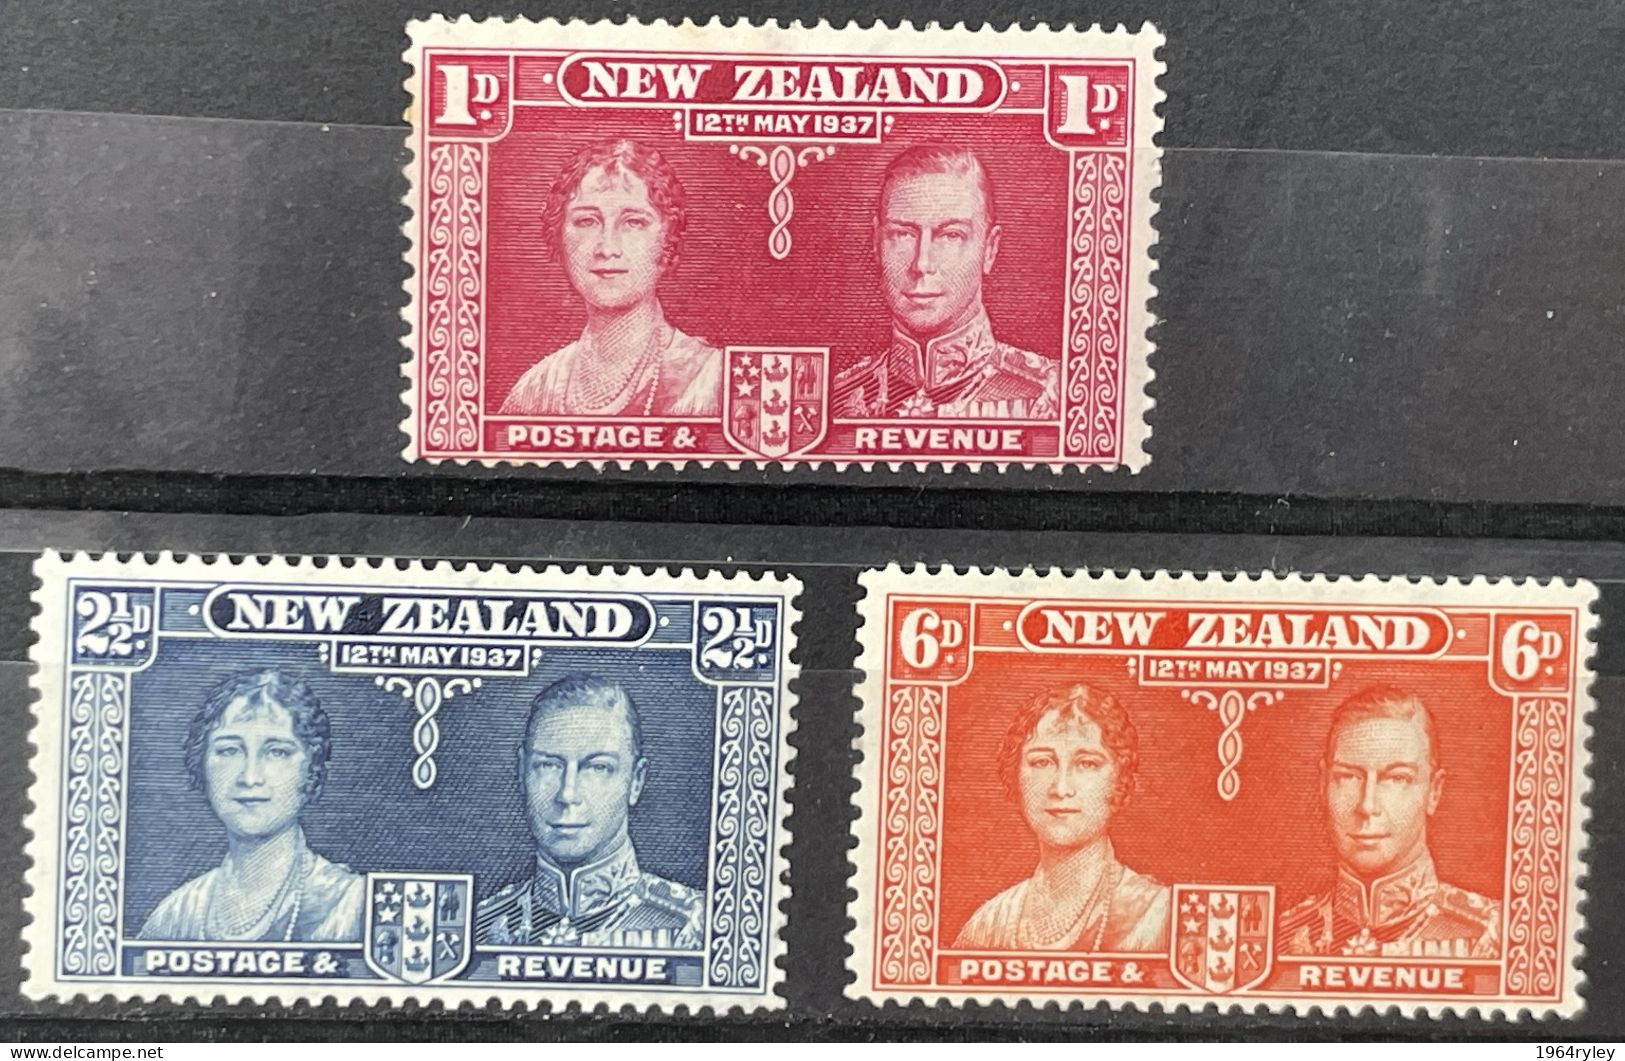 NEW ZEALAND  - MH*  - 1937 CORONATION ISSUE - # 599/601 - Nuovi